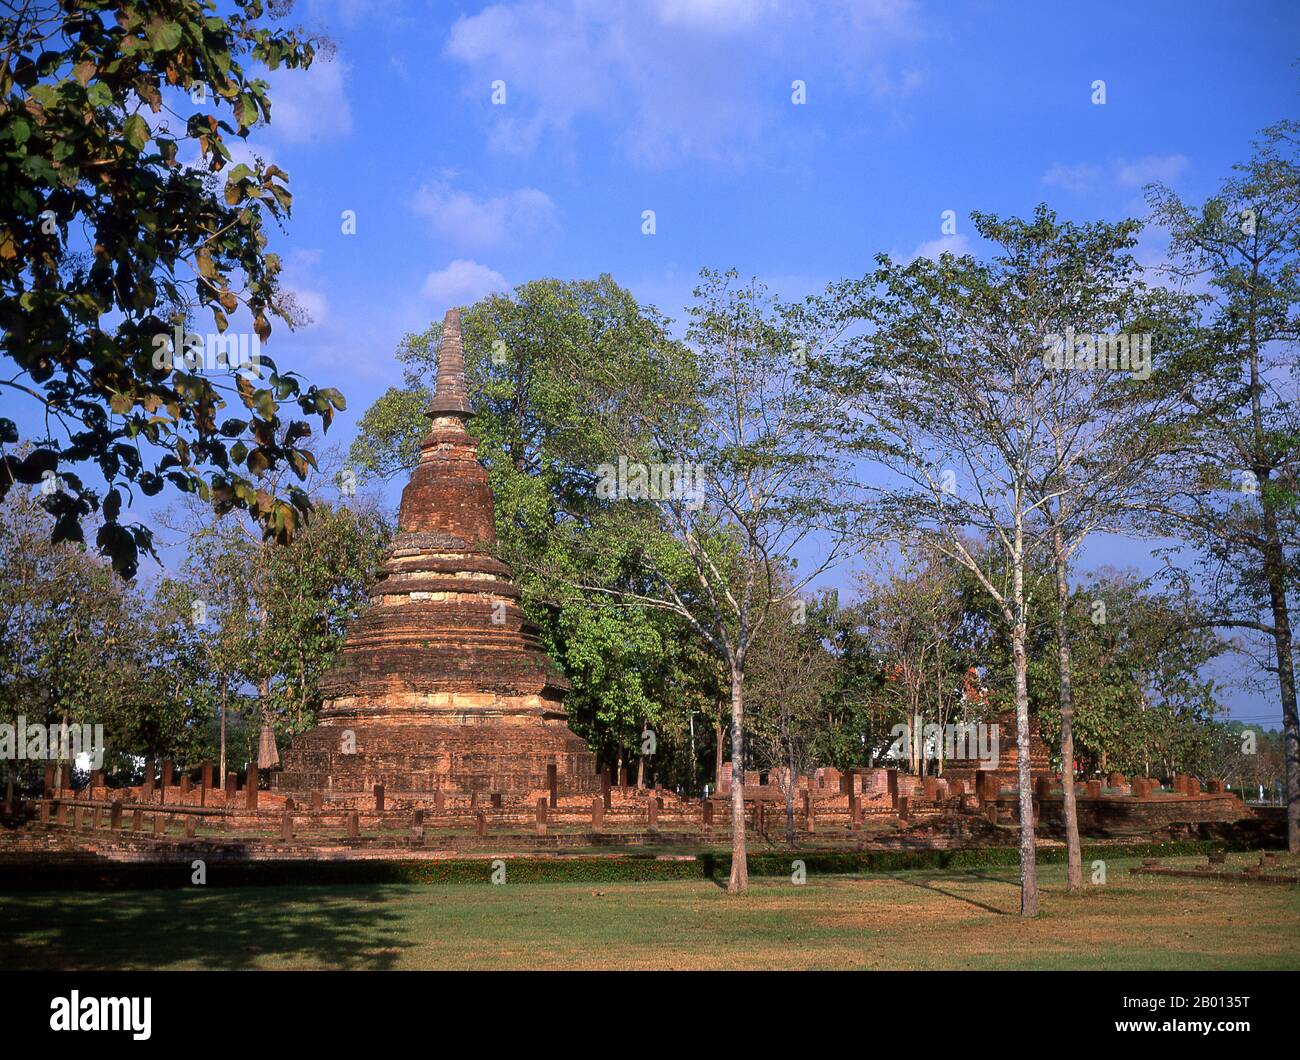 Thailand: Wat Phra That, Kamphaeng Phet Historical Park. Der Kamphaeng Phet Historical Park im Zentrum Thailands war einst Teil des Sukhothai-Königreichs, das im 13. Und 14. Jahrhundert n. Chr. blühte. Das Königreich Sukhothai war das erste der thailändischen Königreiche. Stockfoto